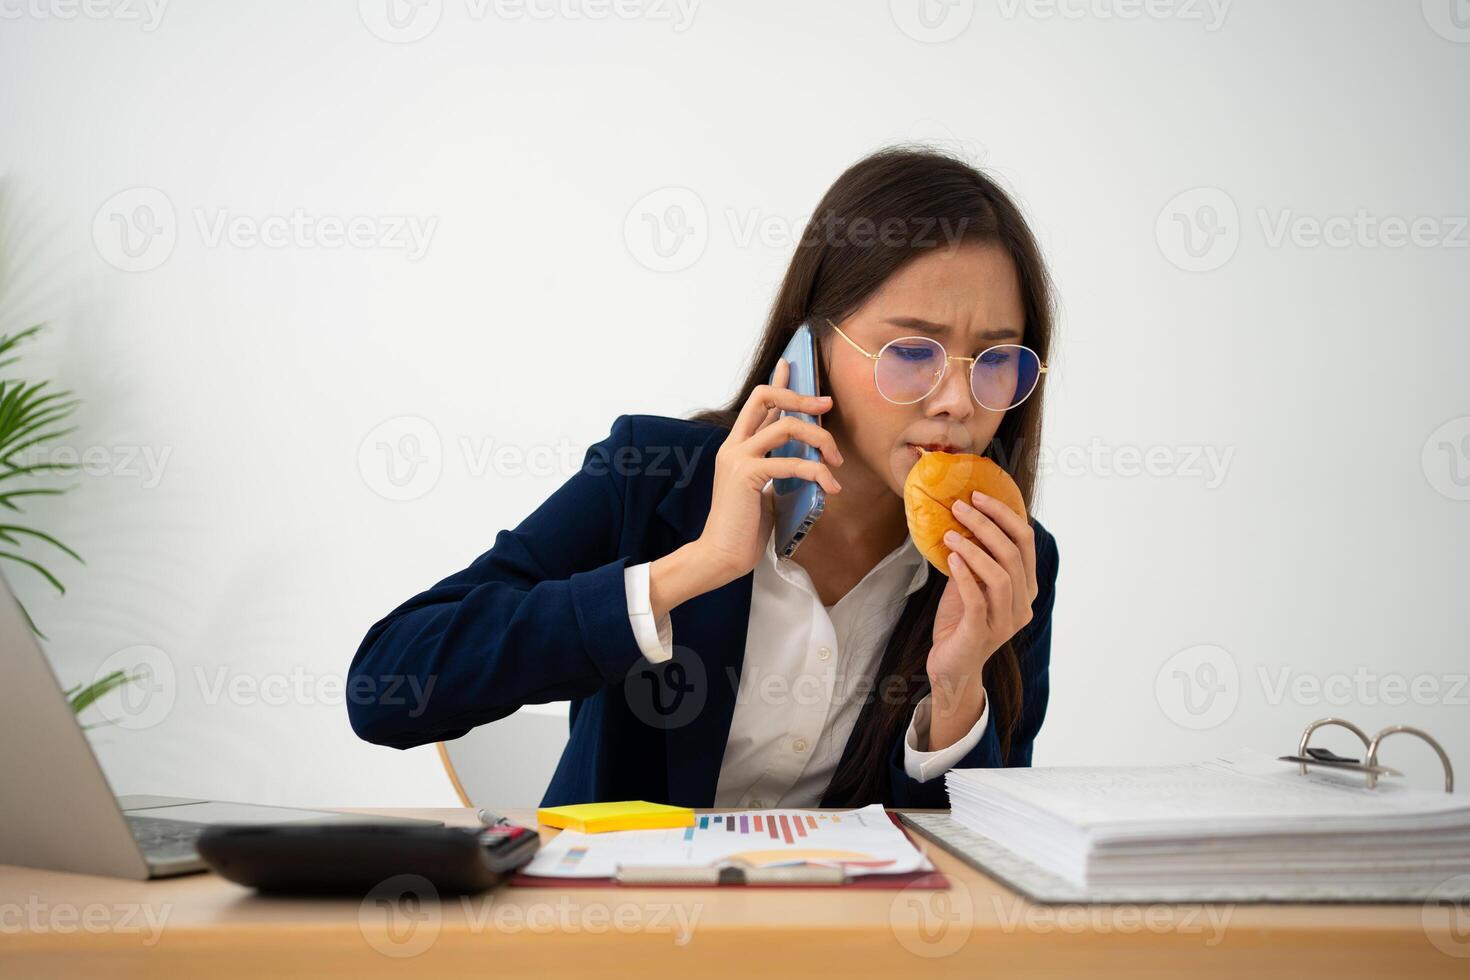 bezig en moe zakenvrouw aan het eten brood en melk voor lunch Bij de bureau kantoor en werken naar leveren financieel verklaringen naar een baas. overwerkt en ongezond voor klaar maaltijden, burn-out concept. foto